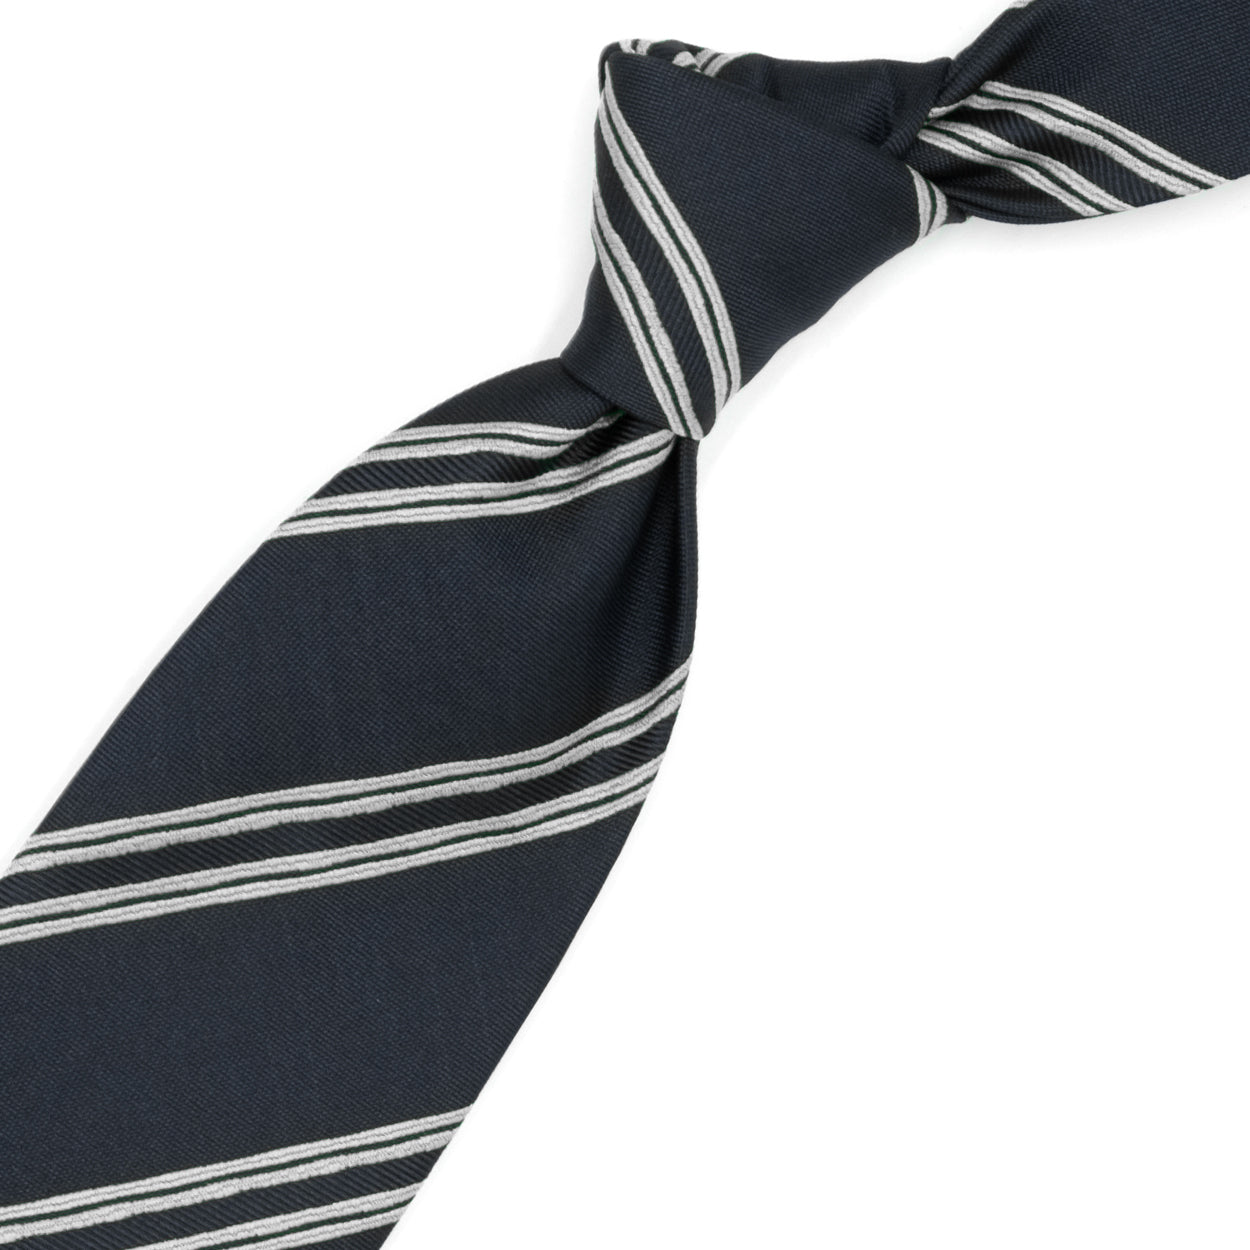 Cravatta nera con righe grigie